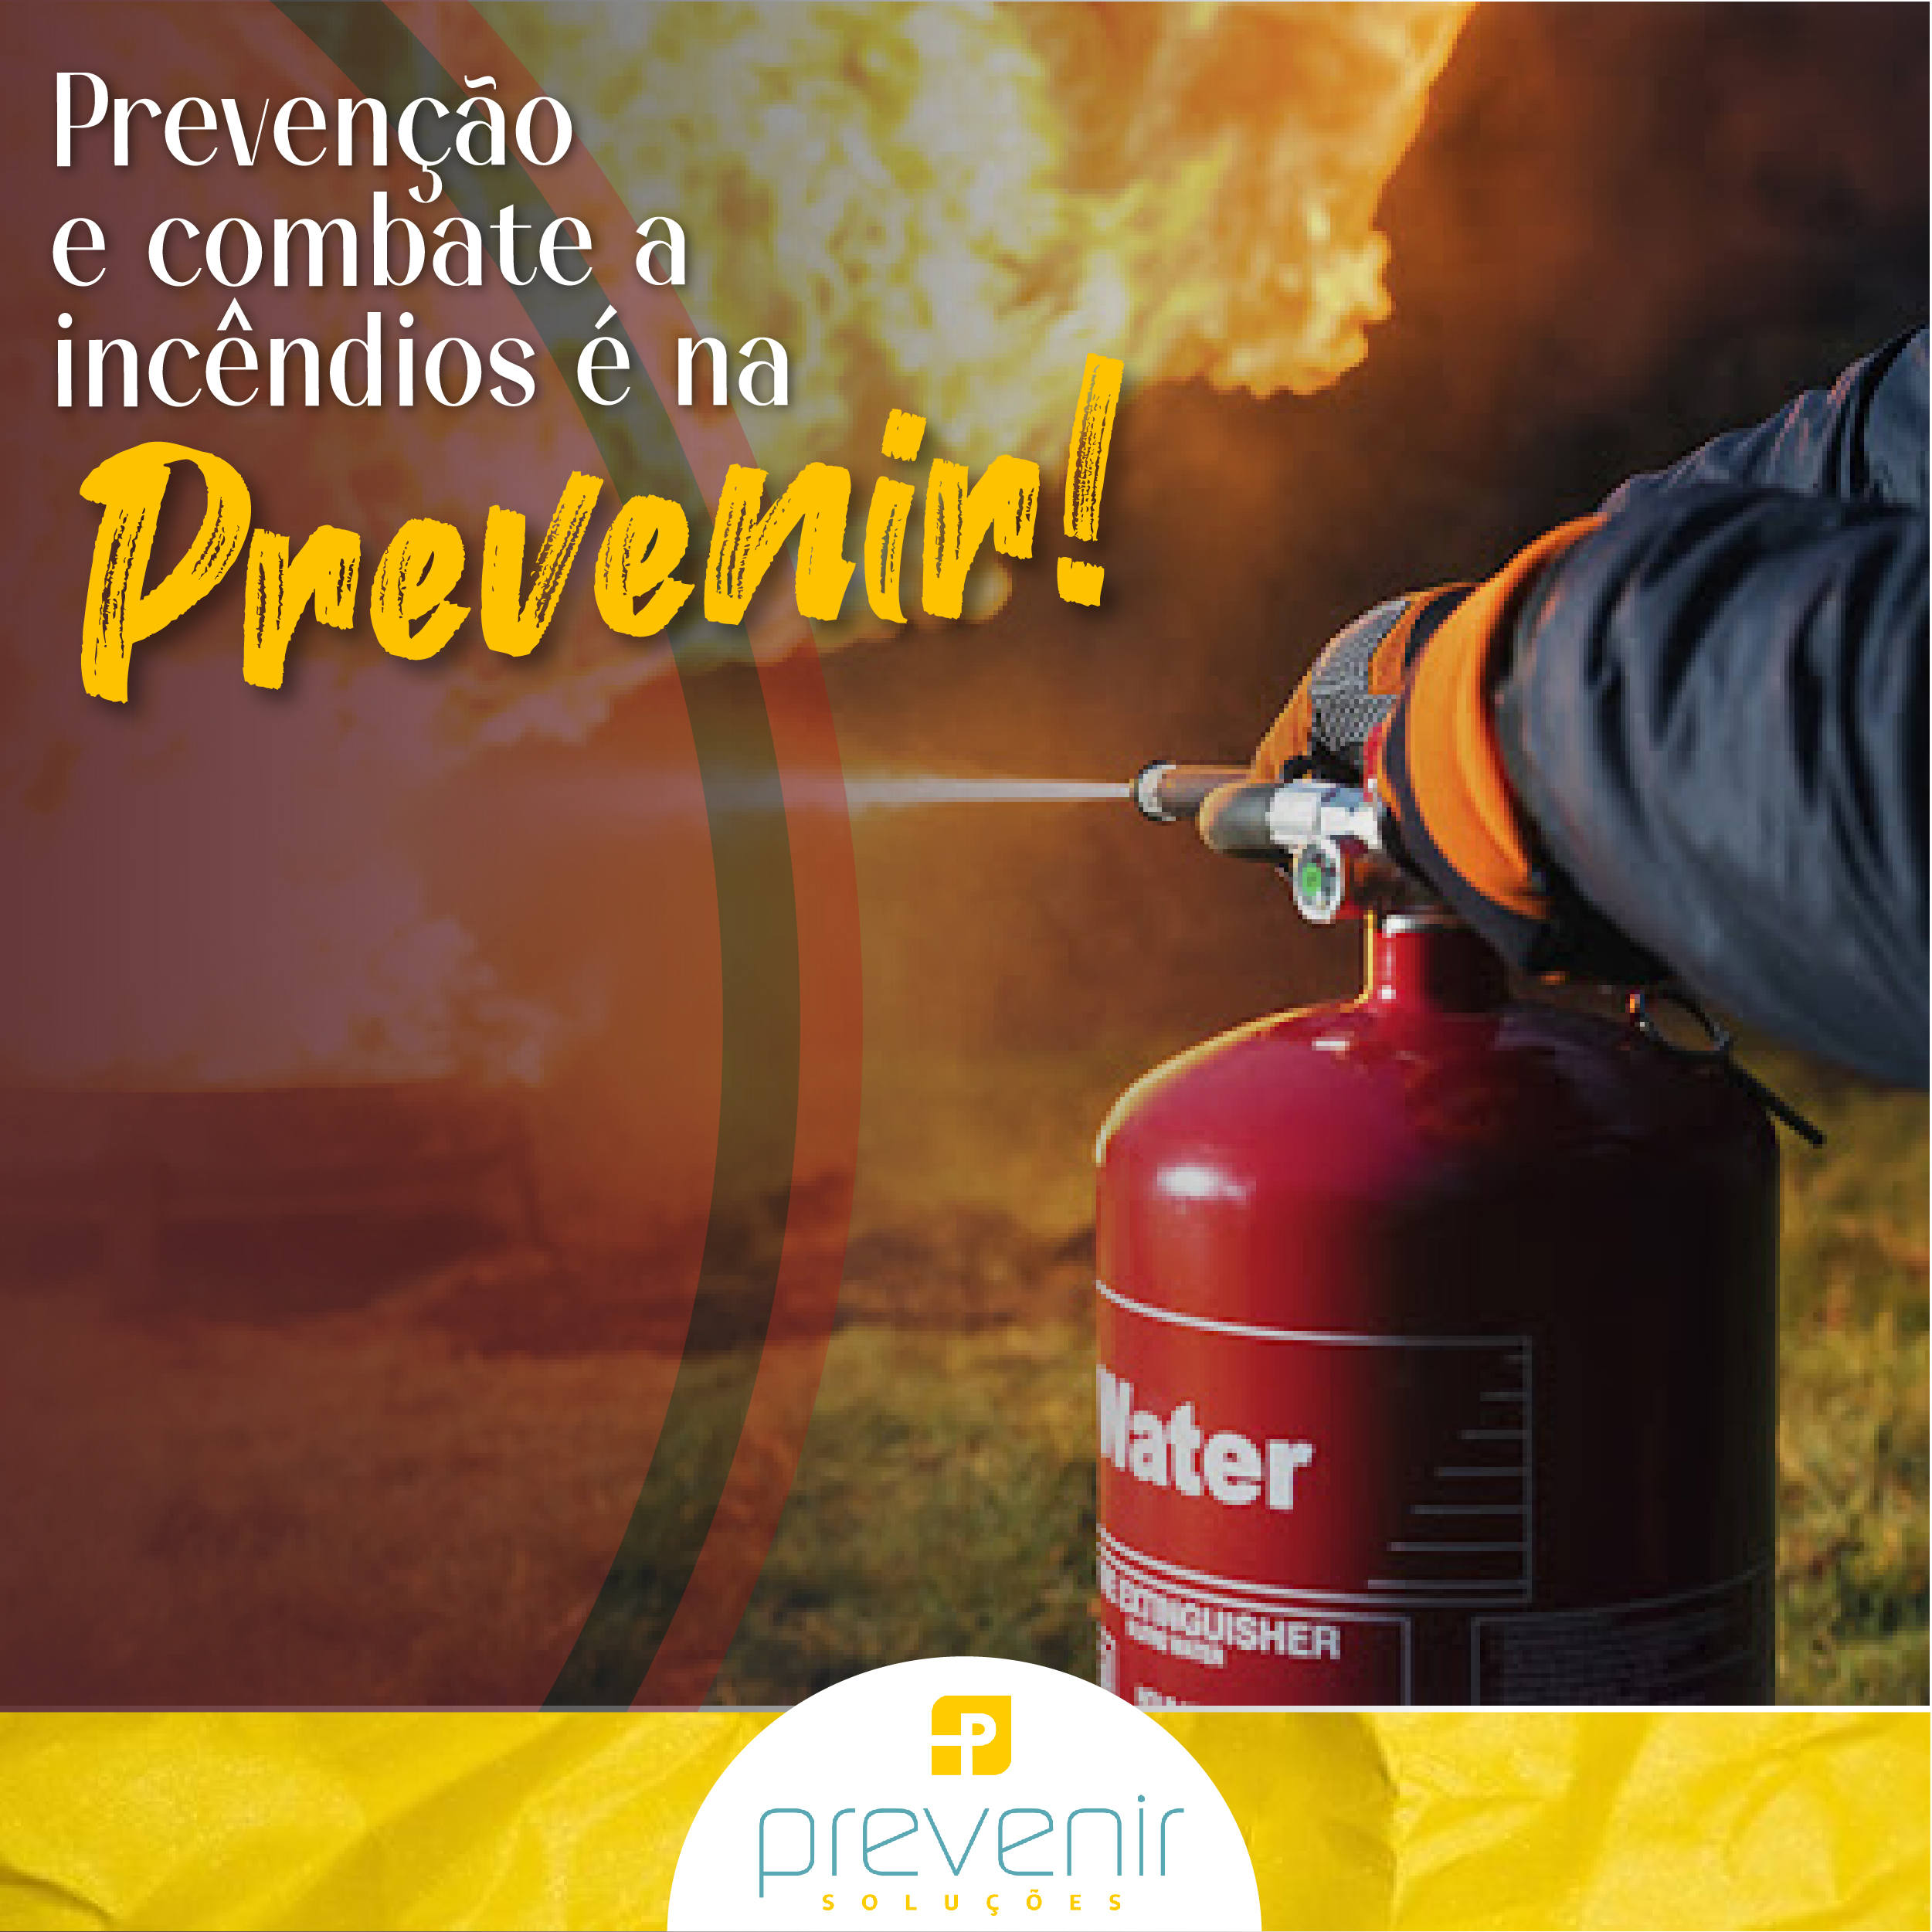 Prevenção e combate a incêndio é na Prevenir